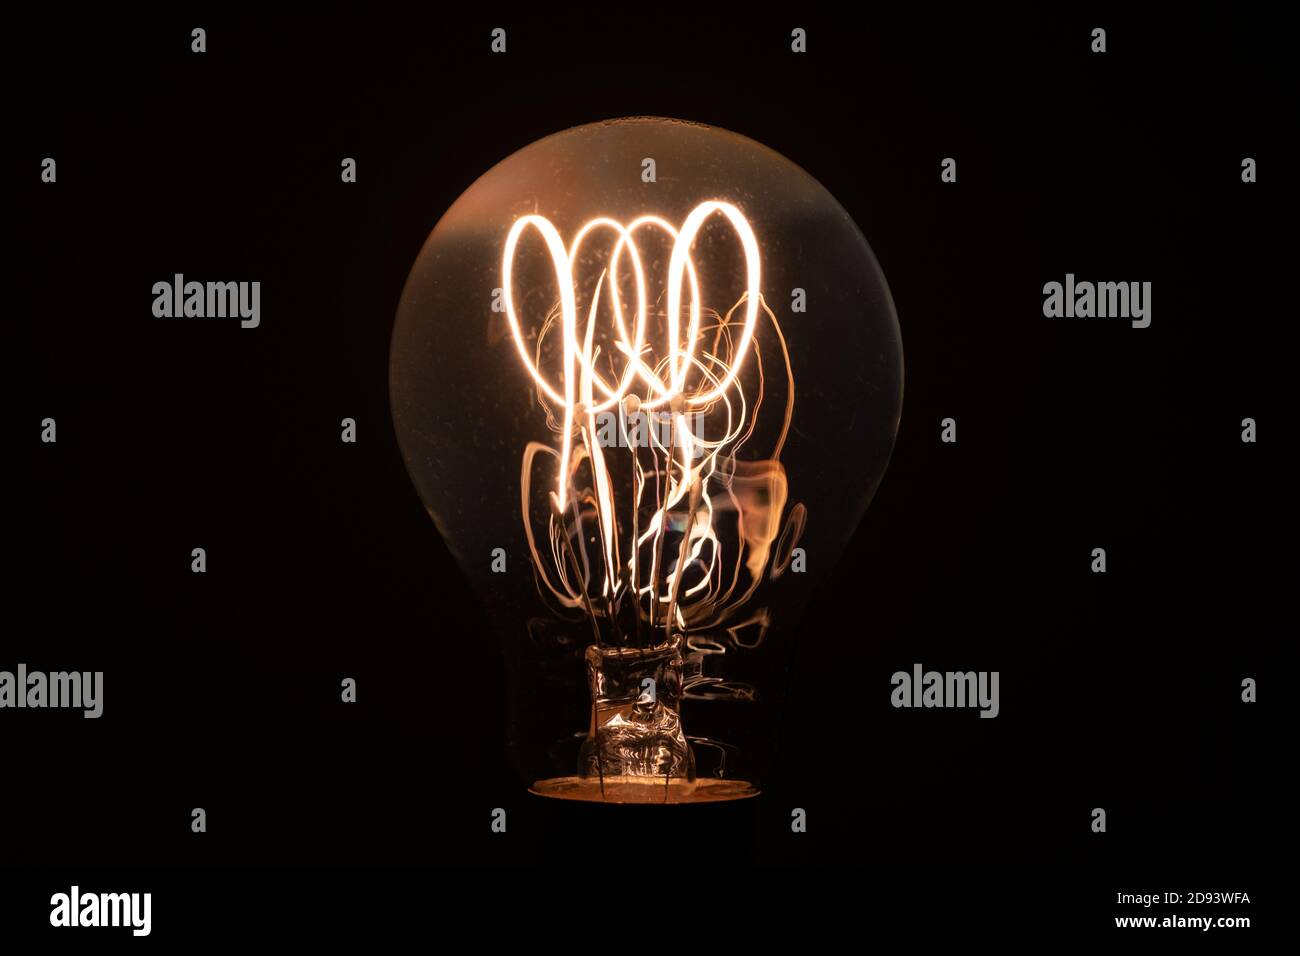 Paulmann Rustika Carbon Filament Lampe - eine moderne Lampe weitgehend identisch in Design und Struktur zu original Carbon Filament Lampen. Repro, modern Stockfoto